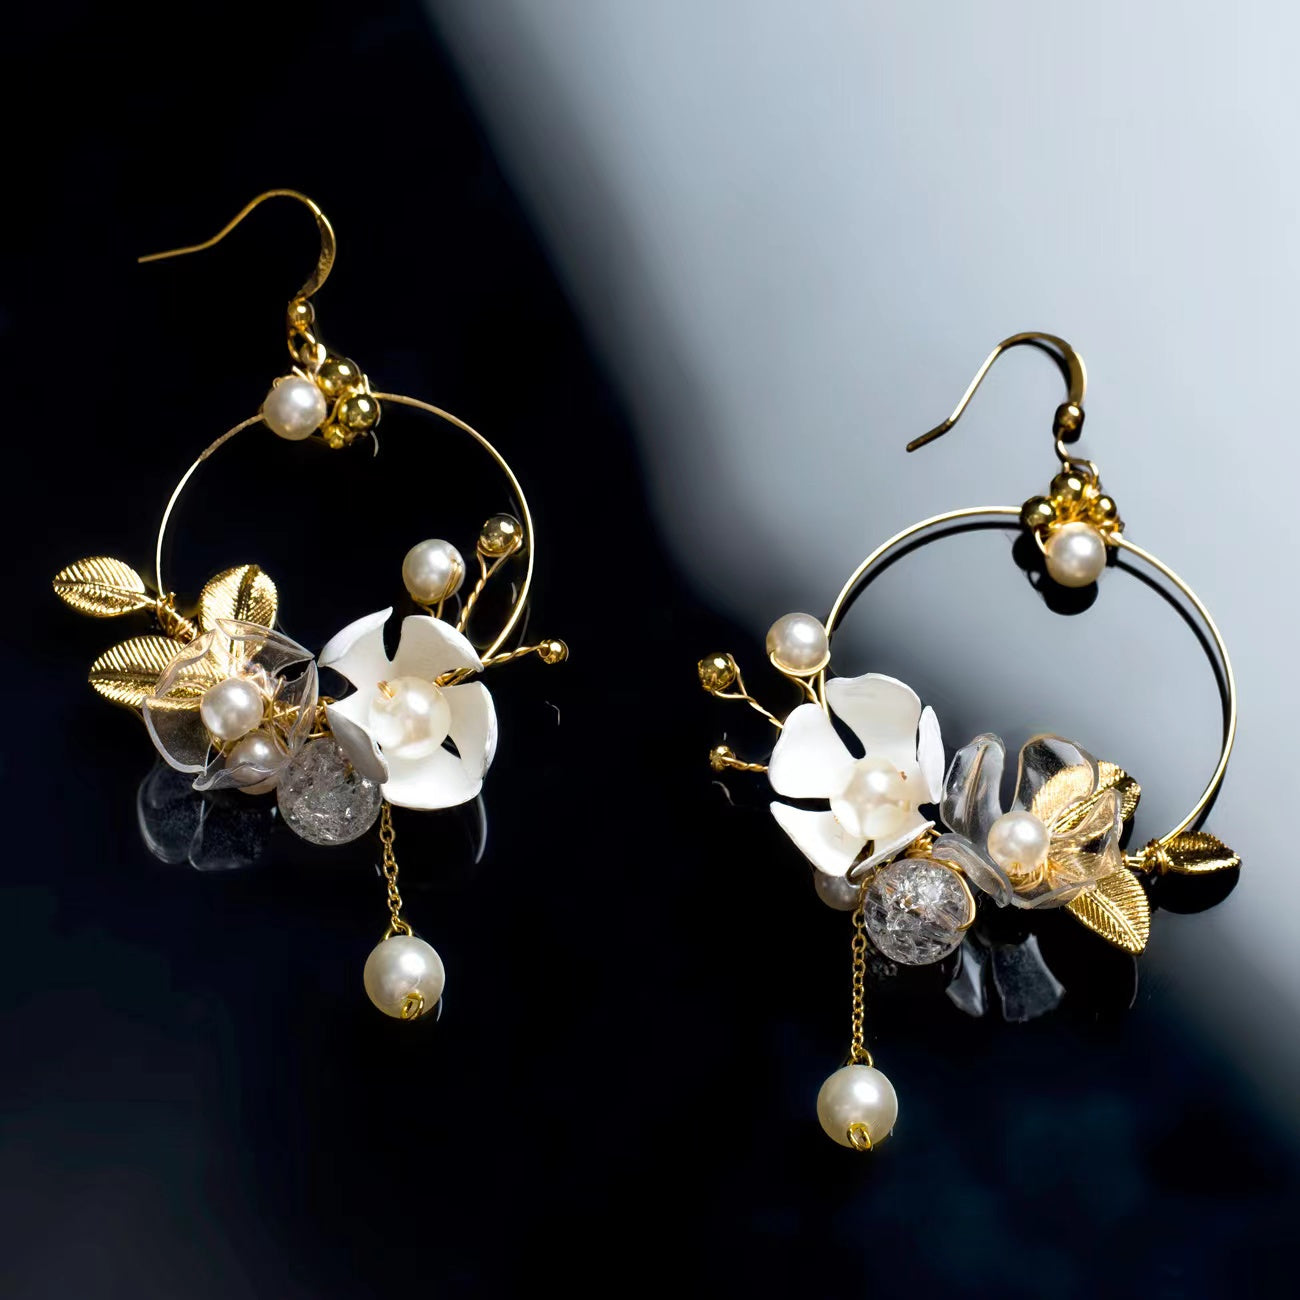 Florale Jugendstil-Ohrringe - Floral Art Nouveau Earrings-2